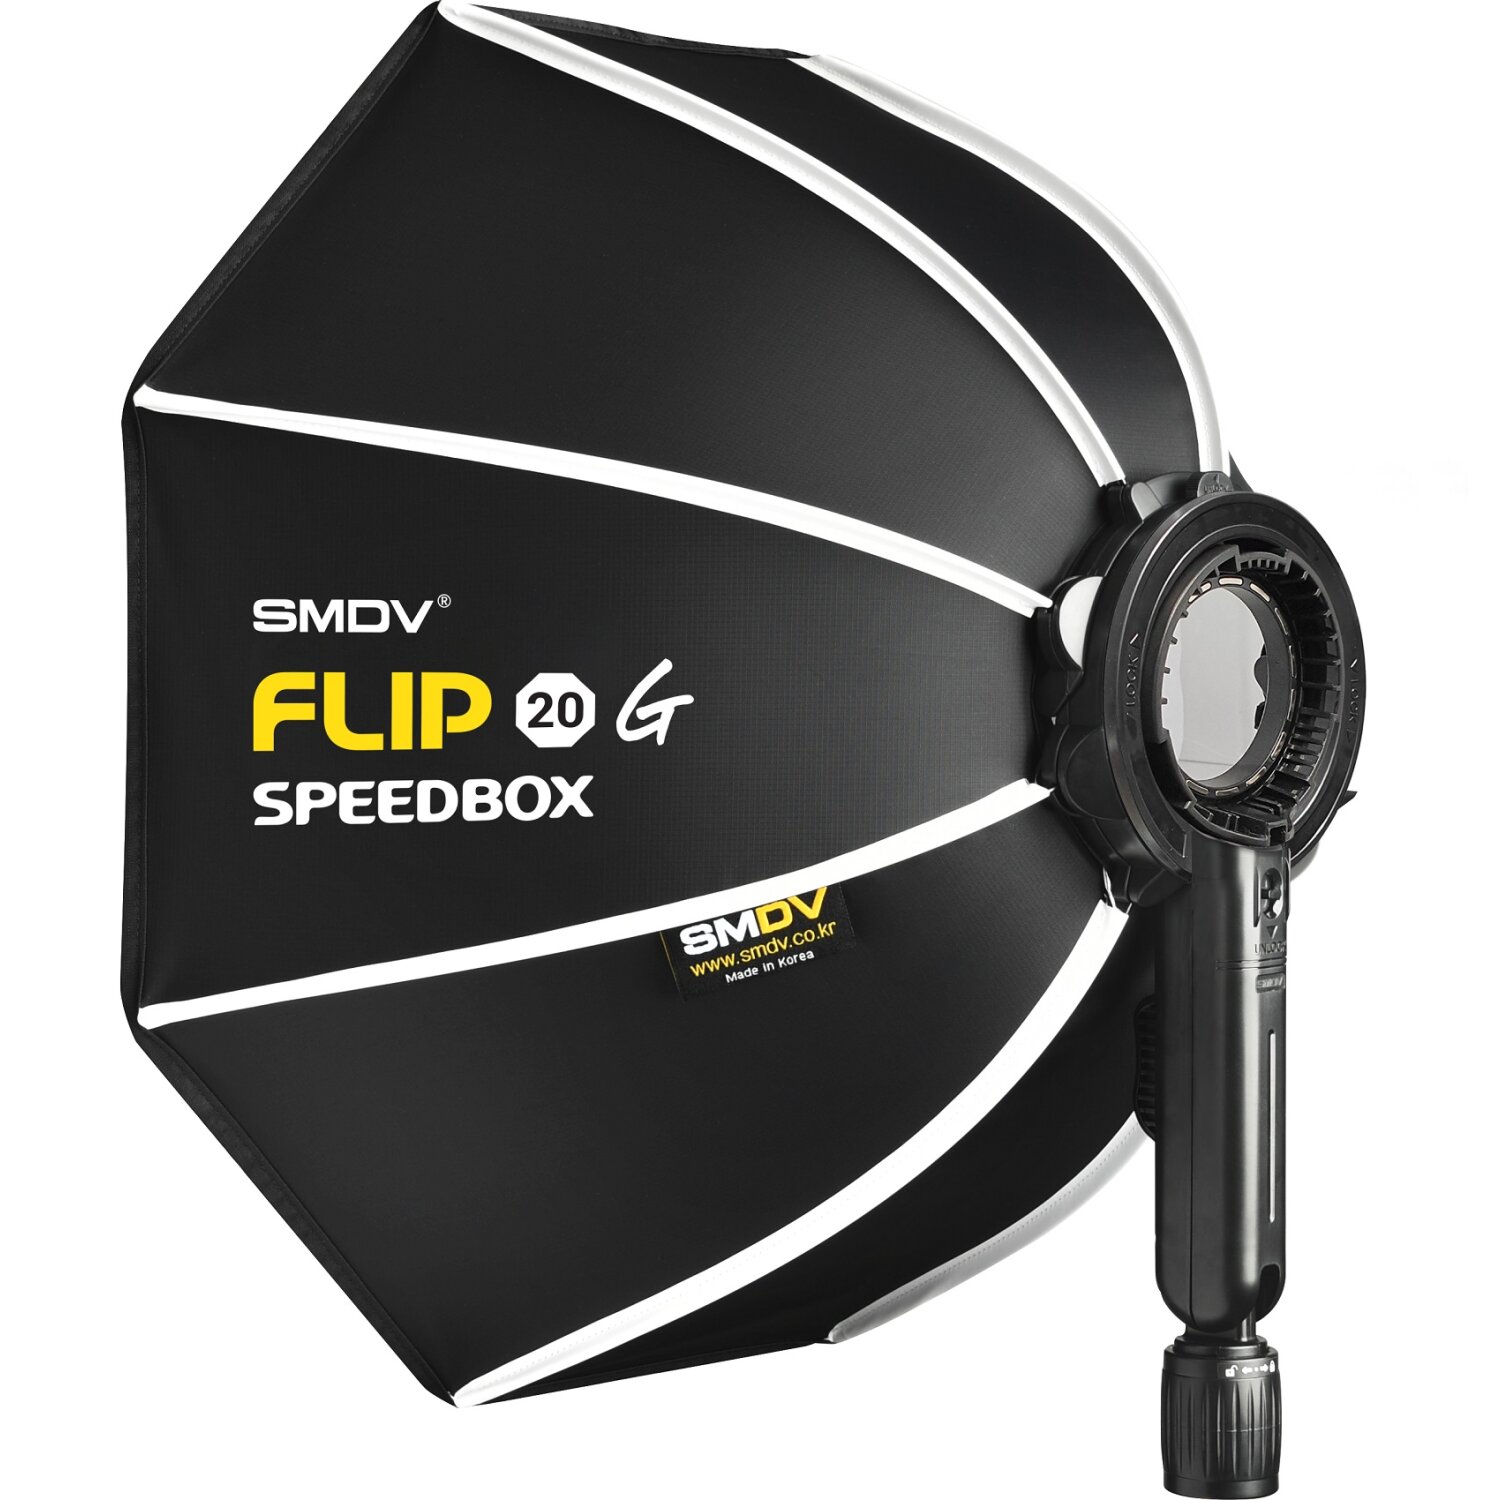 Impulsfoto SMDV Innovative Softbox Speedbox-Flip20 - 50 cm | 440 x 130 mm | Erste Klappbare Softbox der Welt | Winkel Verstellbar | Mit Adapter für Godox V1